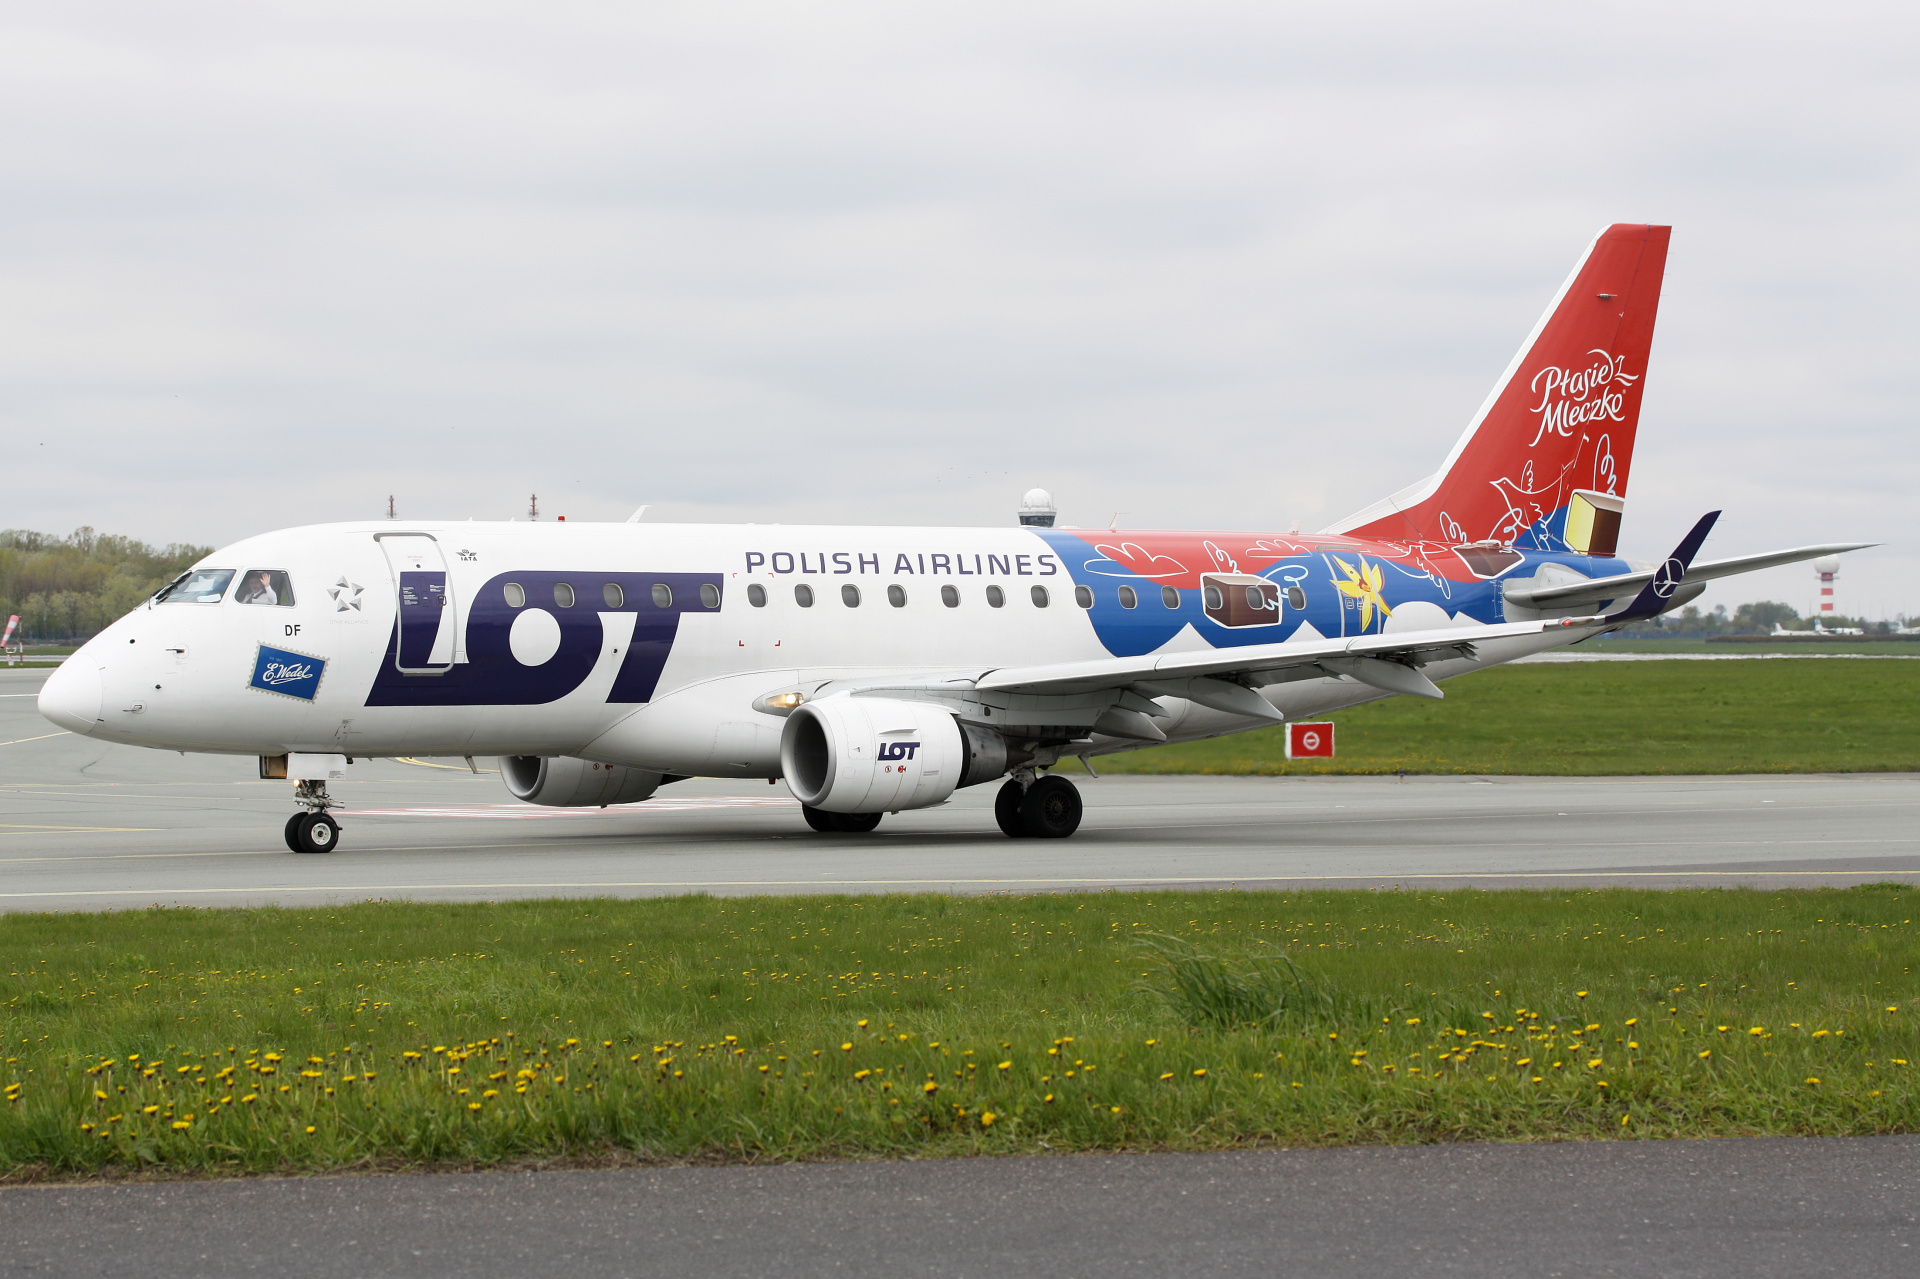 SP-LDF (malowanie Wedel Ptasie Mleczko) (Samoloty » Spotting na EPWA » Embraer E170 » Polskie Linie Lotnicze LOT)